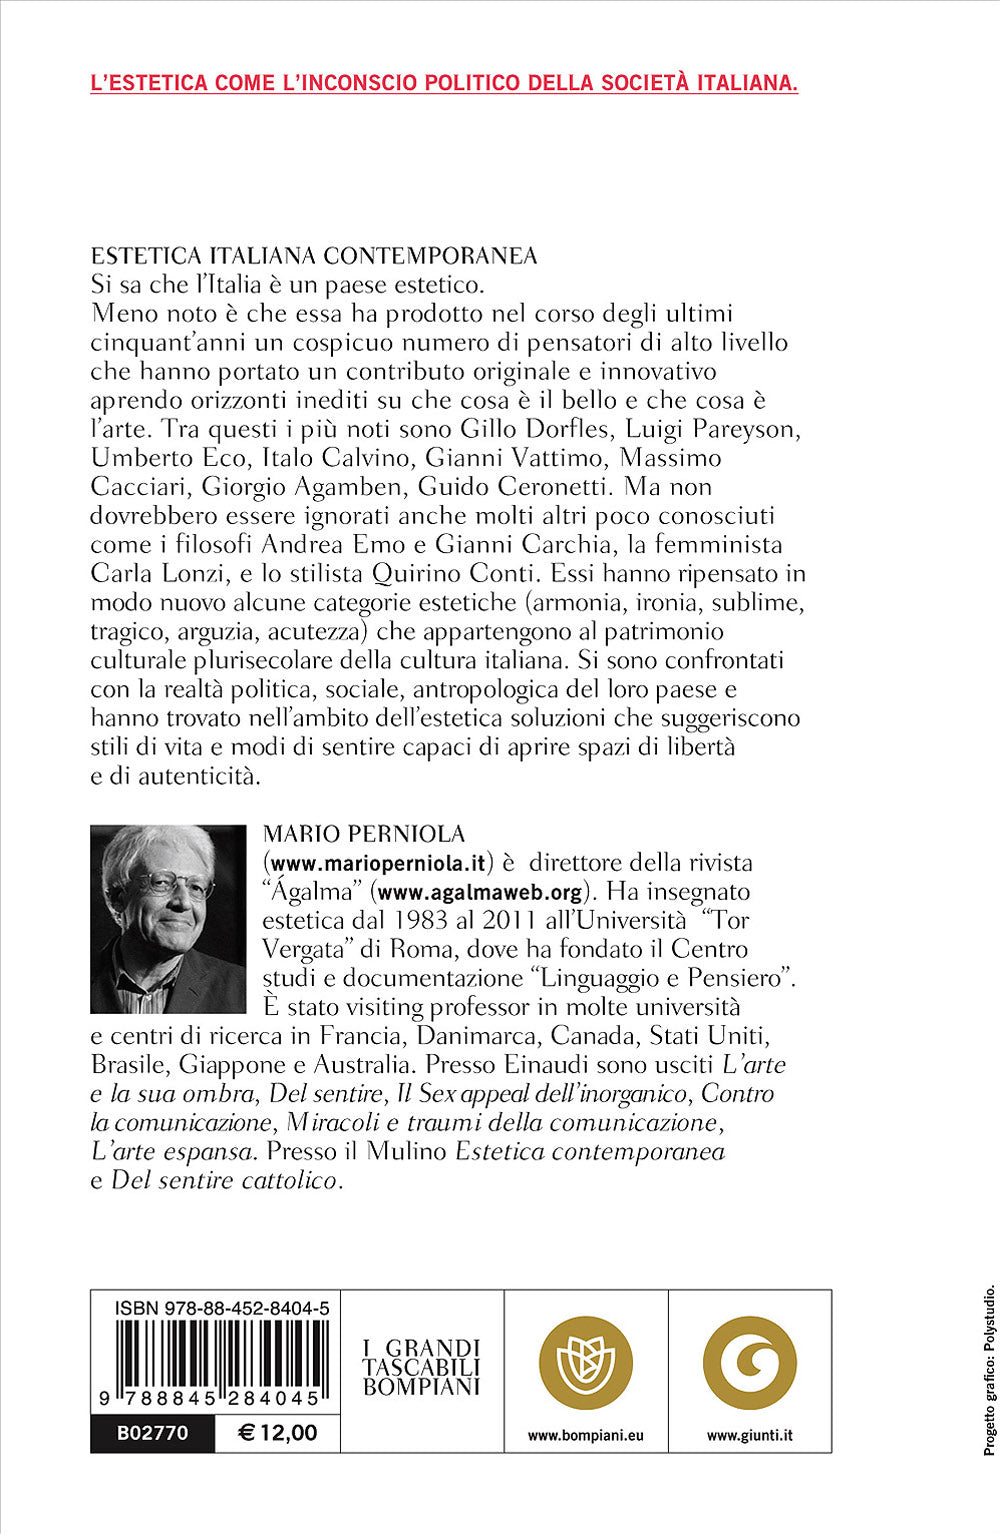 Estetica italiana contemporanea. Trentadue autori che hanno fatto la storia degli ultimi cinquant'anni